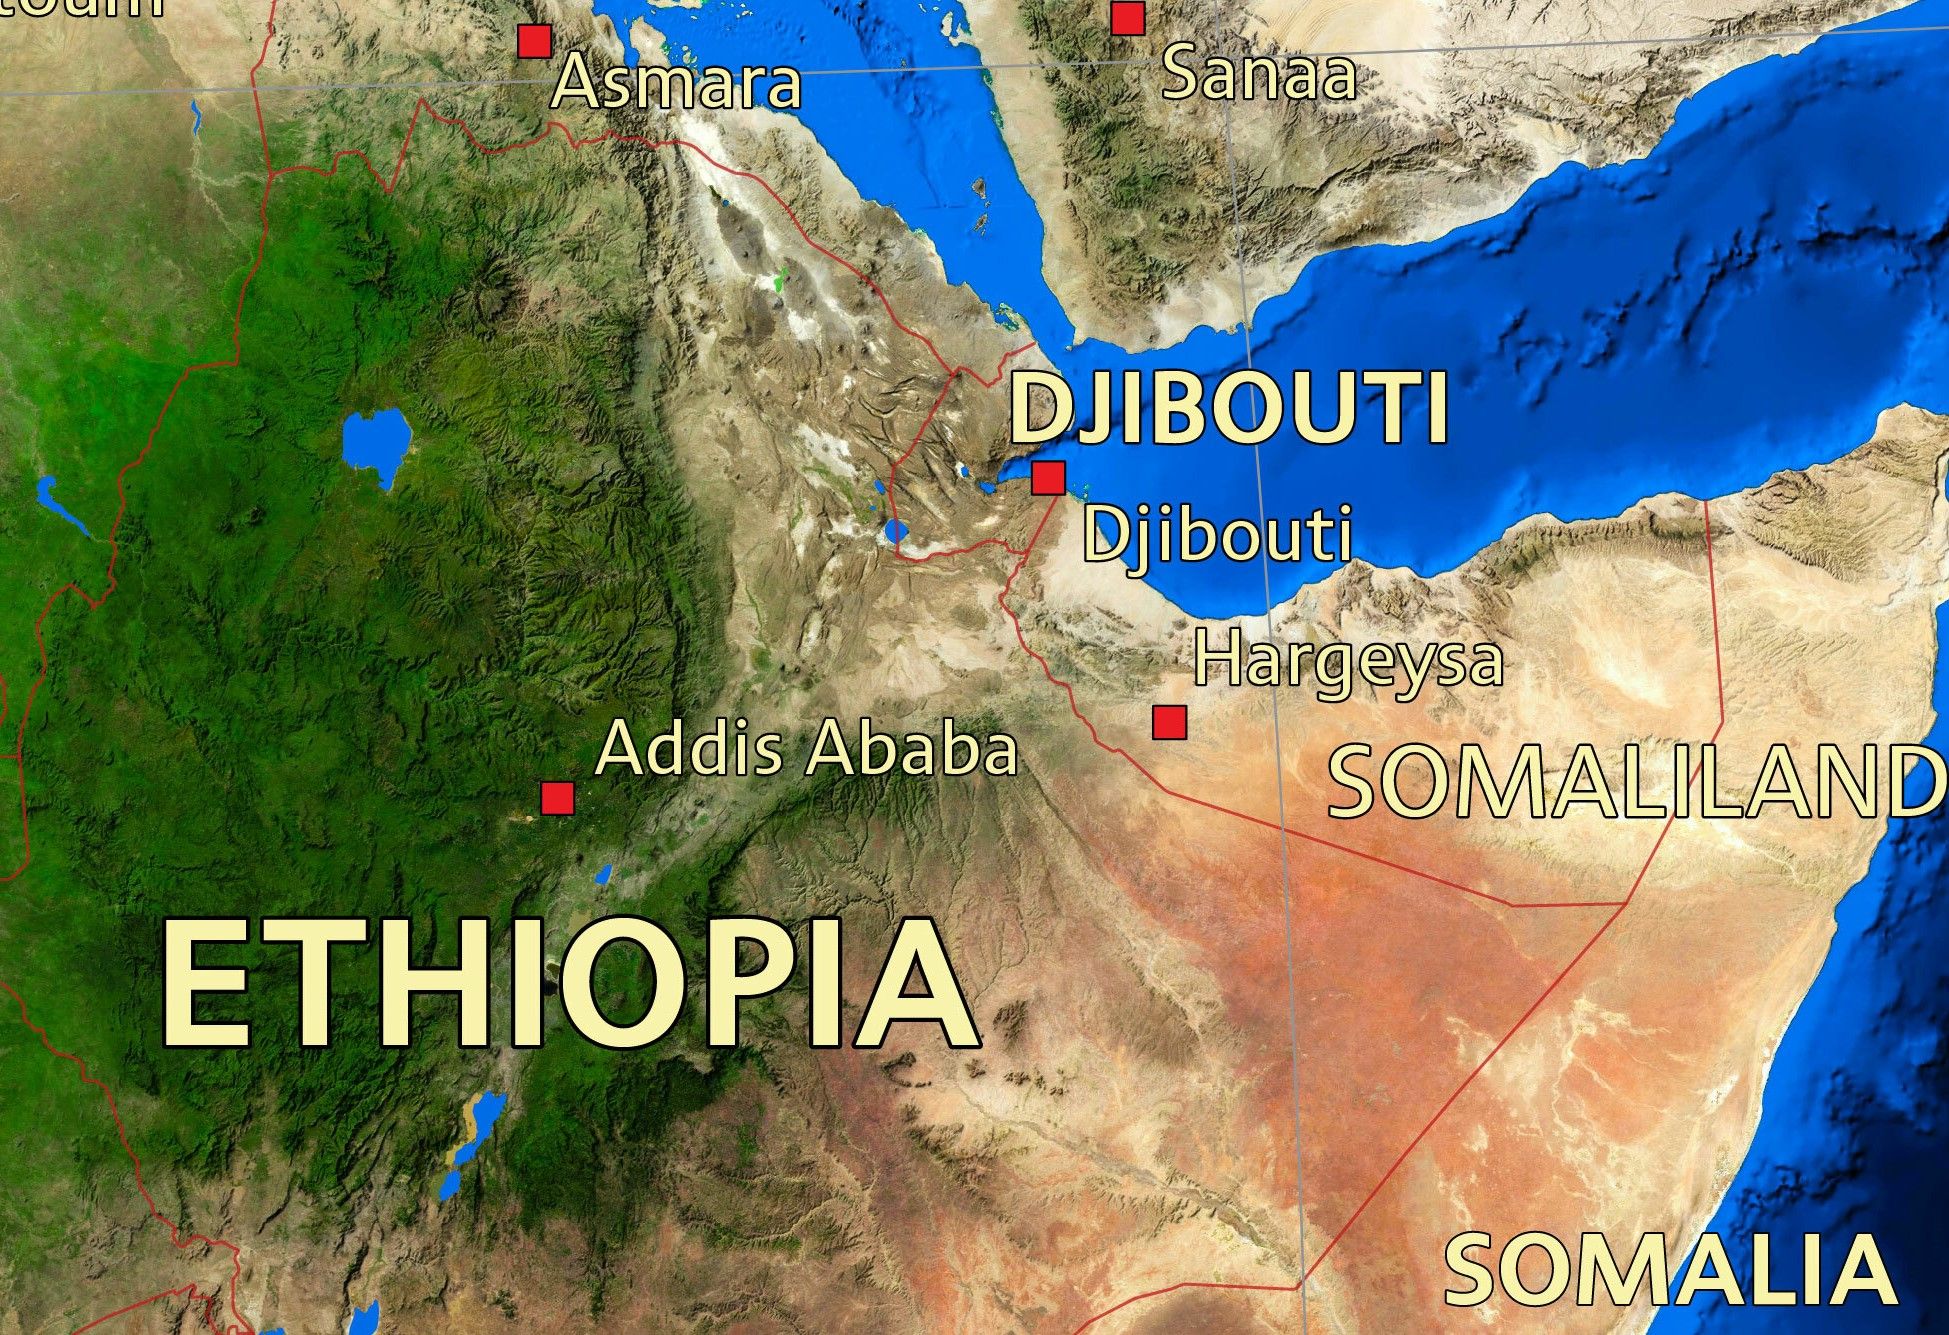 Map showing Somalia and Somaliland